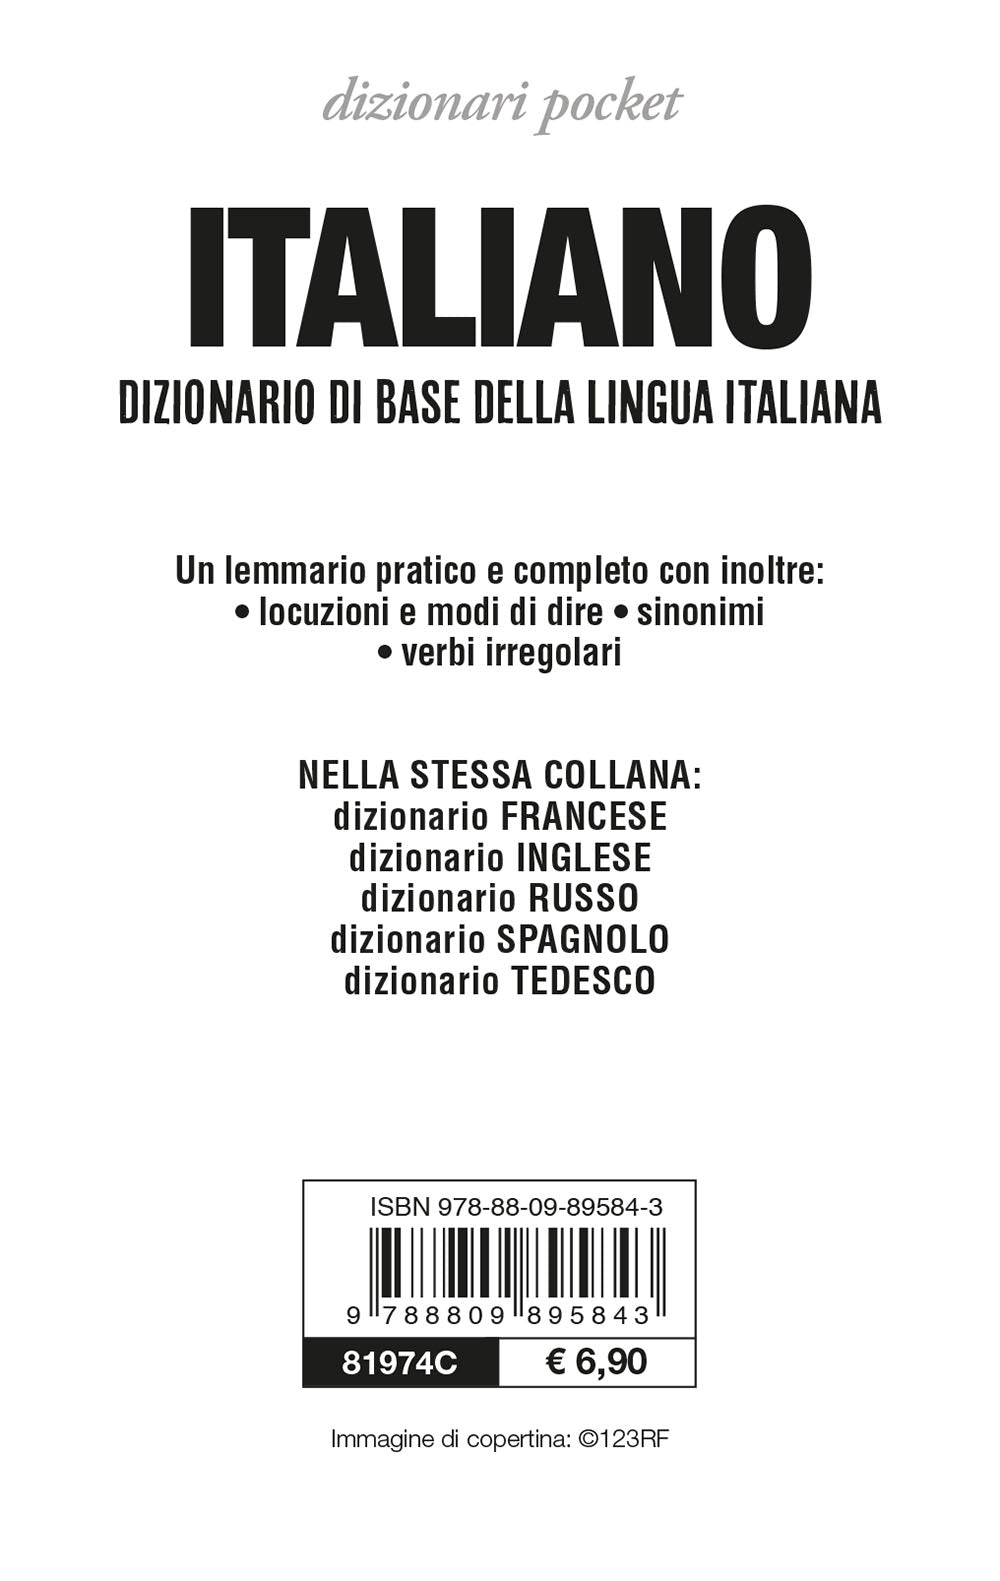 Dizionario italiano, Roberto Mari